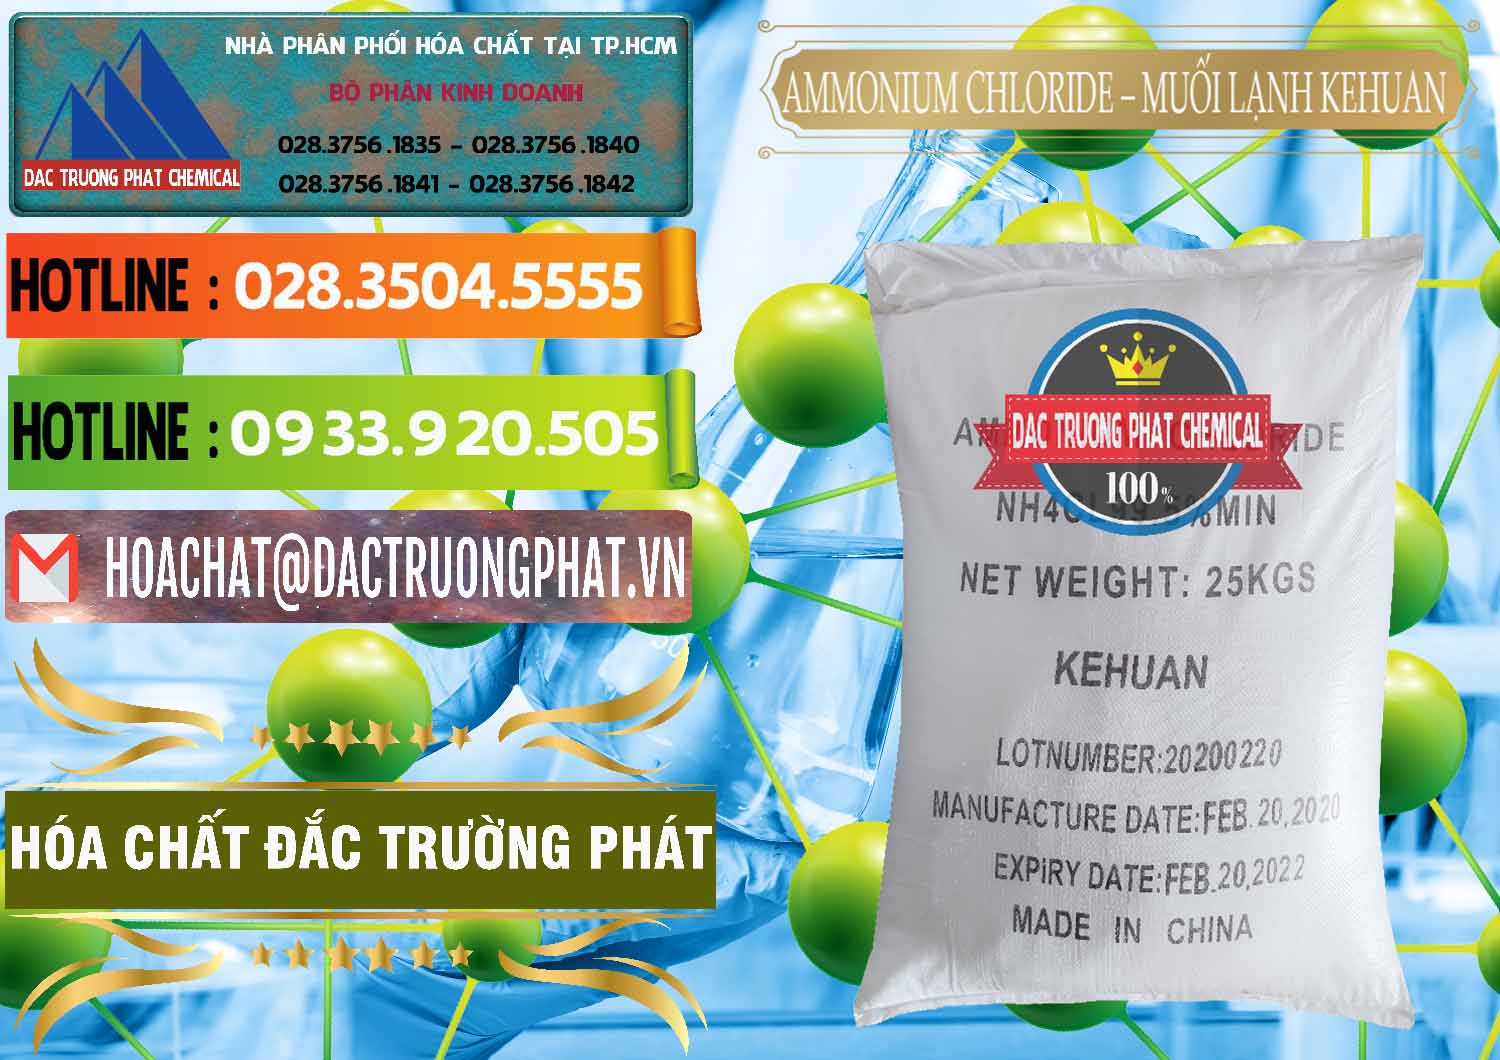 Đơn vị chuyên kinh doanh & bán Ammonium Chloride – NH4CL Muối Lạnh Kehuan Trung Quốc China - 0022 - Nơi phân phối _ bán hóa chất tại TP.HCM - cungcaphoachat.com.vn